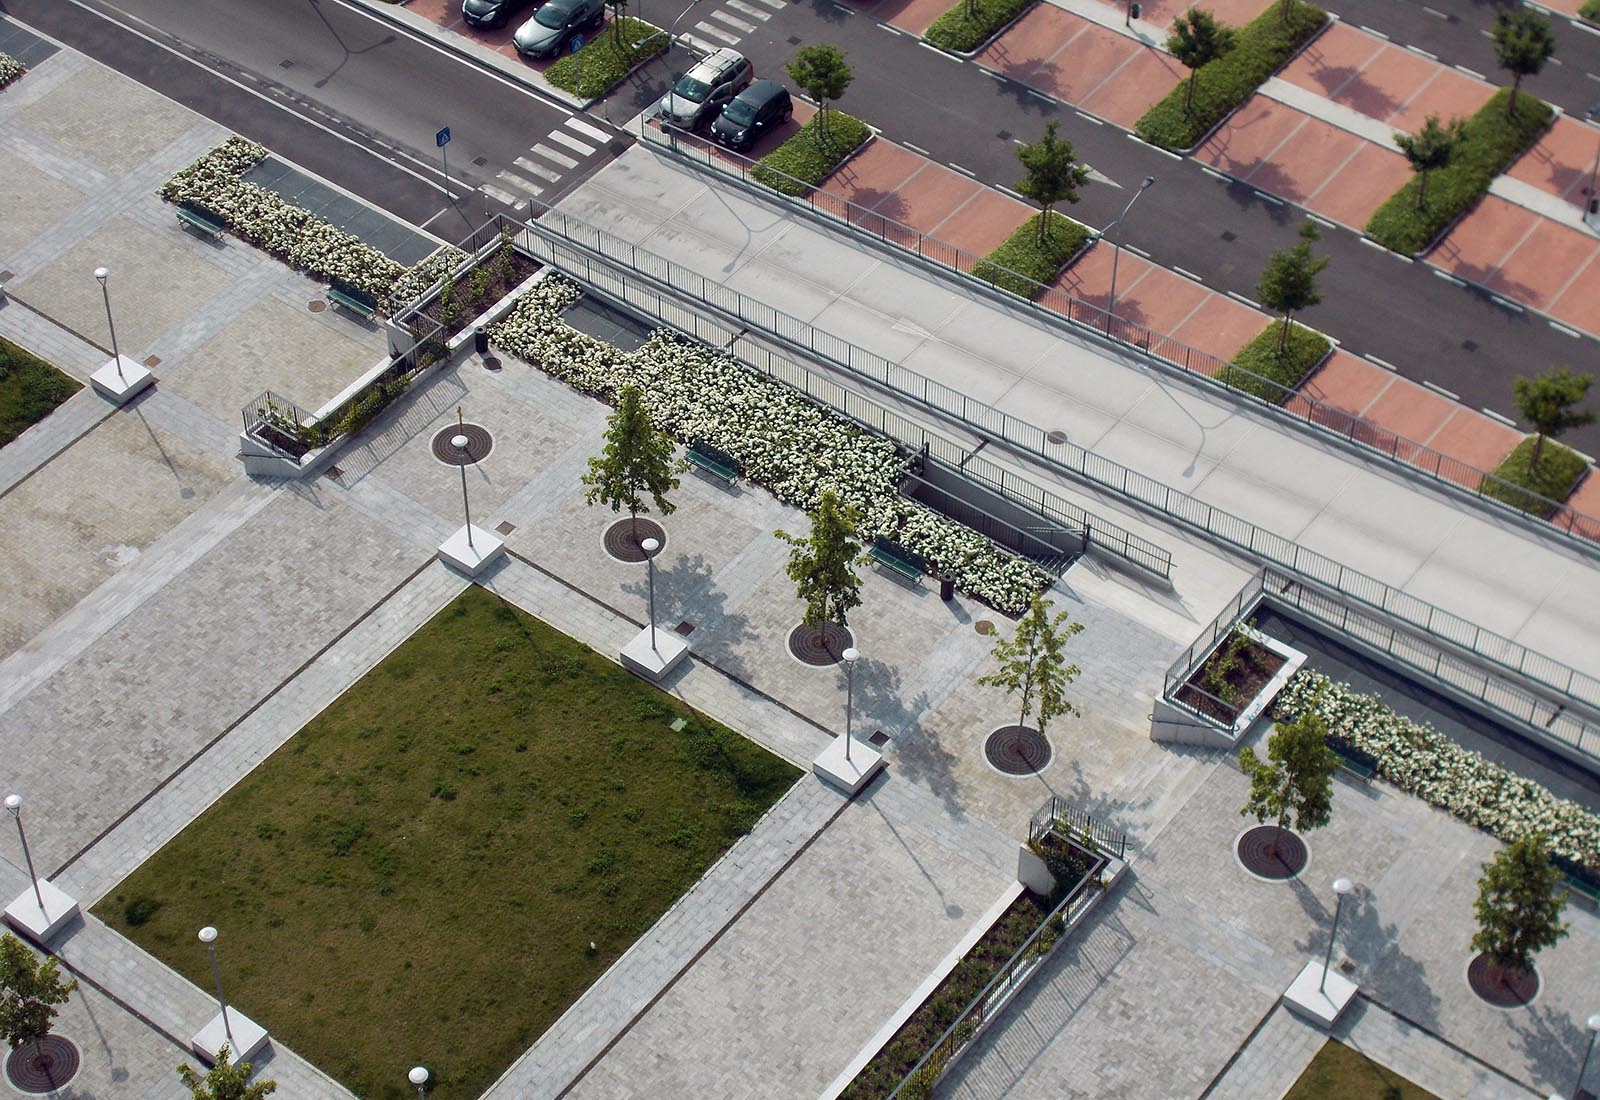 Piazza e parcheggio Adriano - La piazza